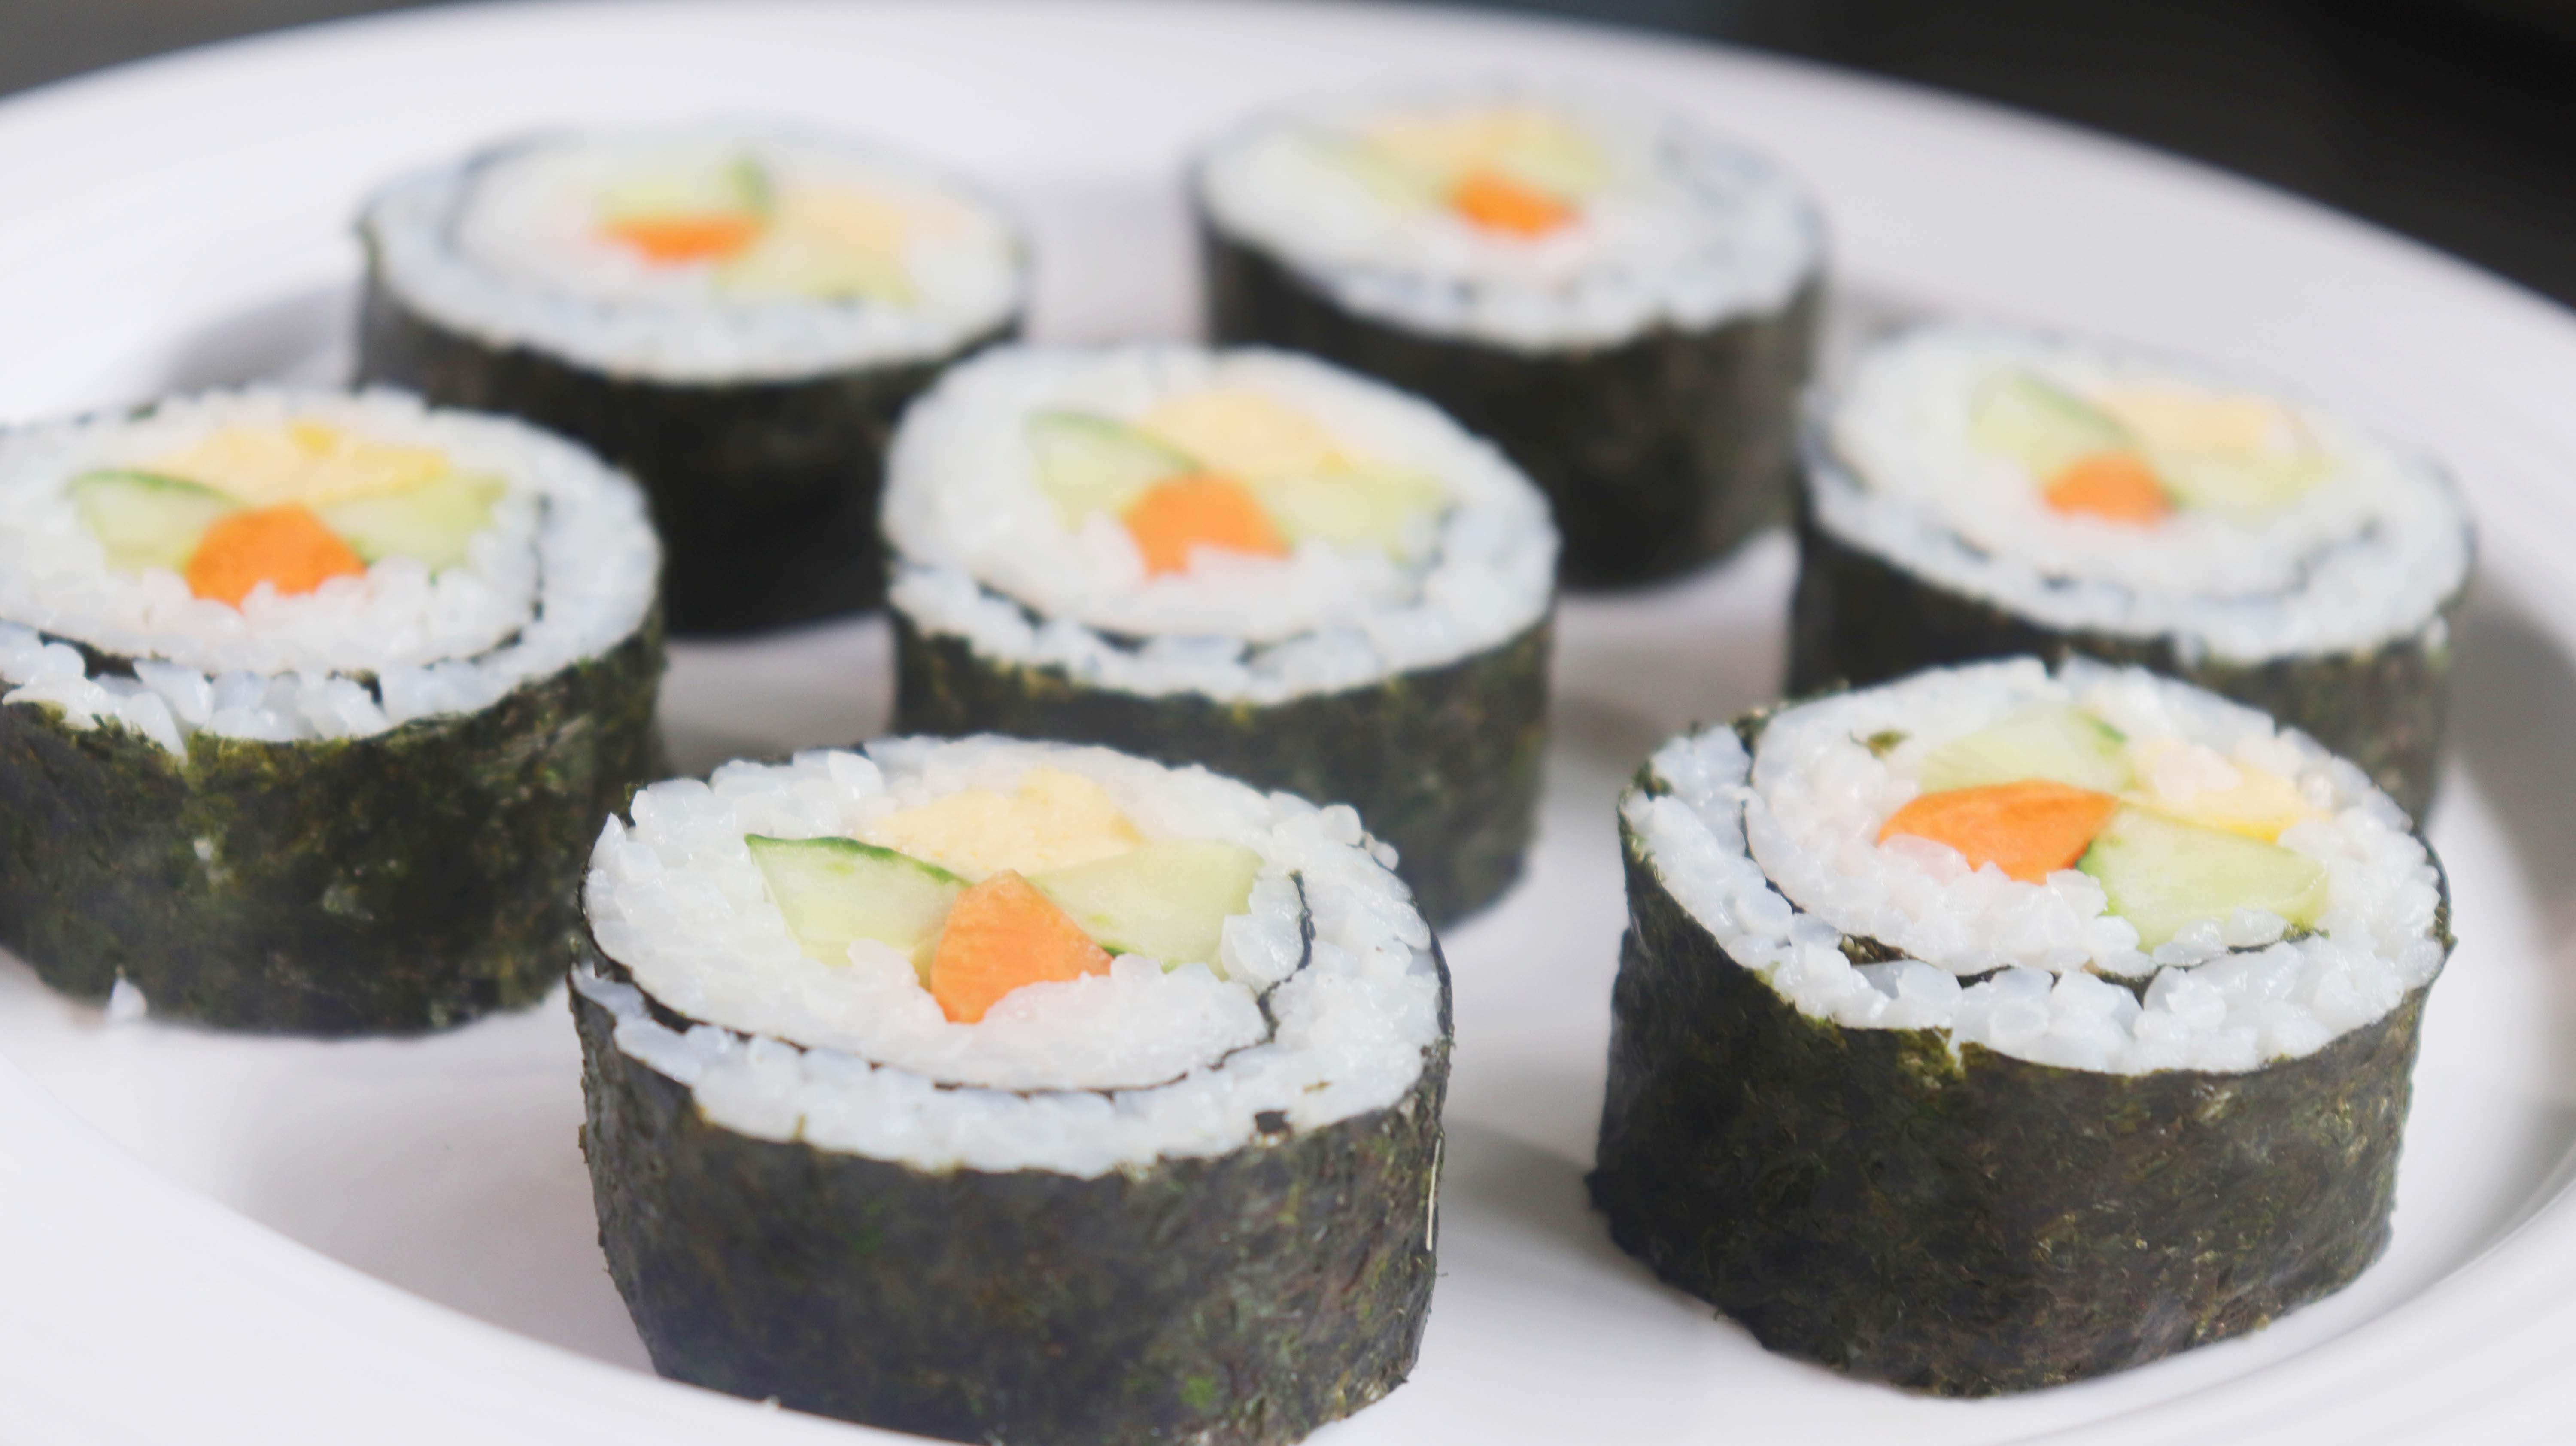 寿司怎么做?用最简单的食材,做出营养健康的低卡美味!